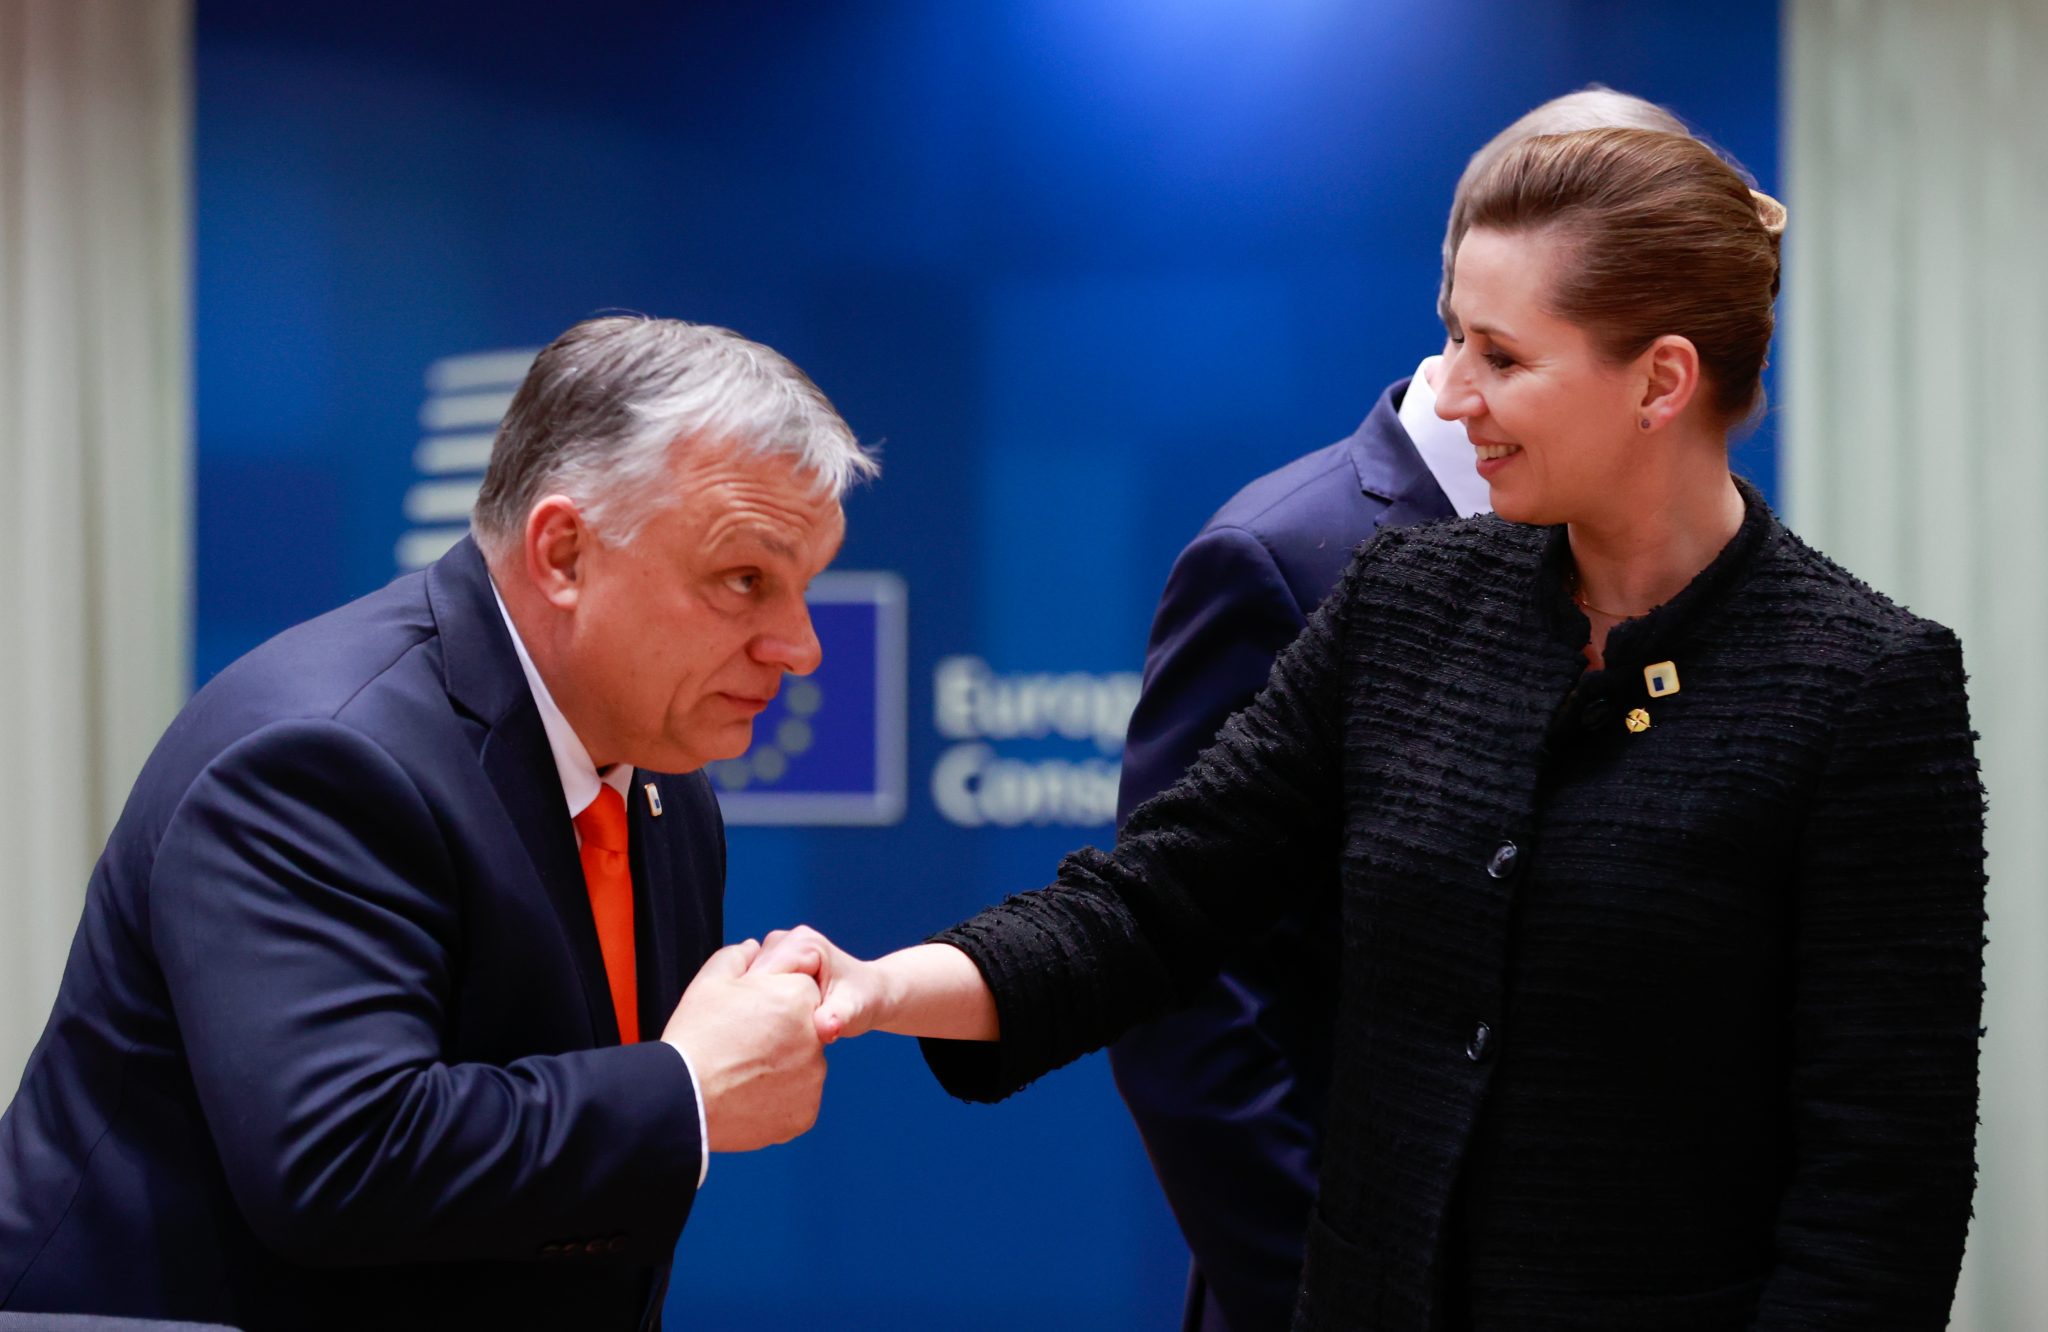 Medien vergleichen Dänemarks Mette Frederiksen mit Viktor Orbán